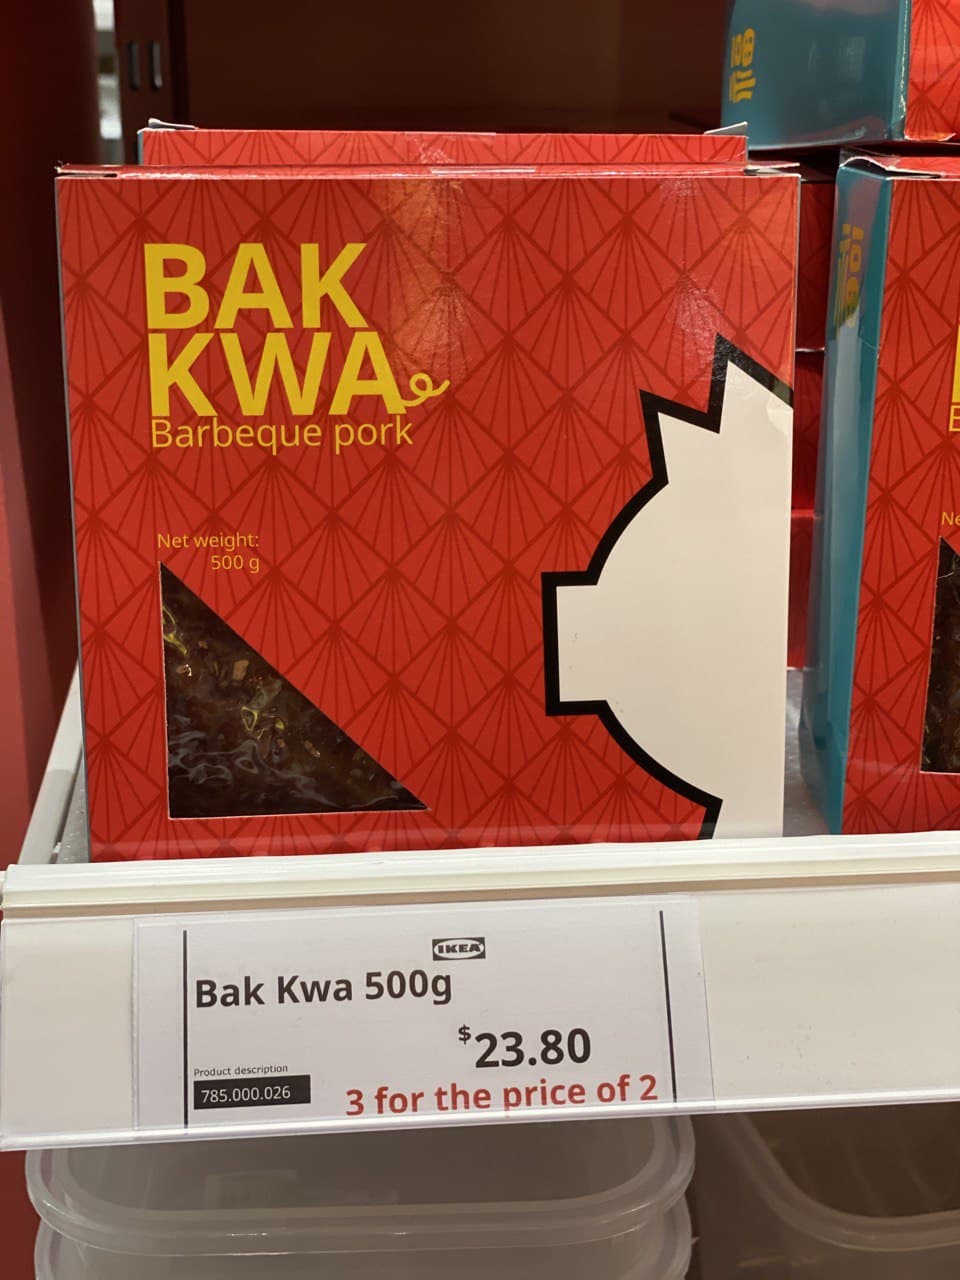 Discount for bak kwa